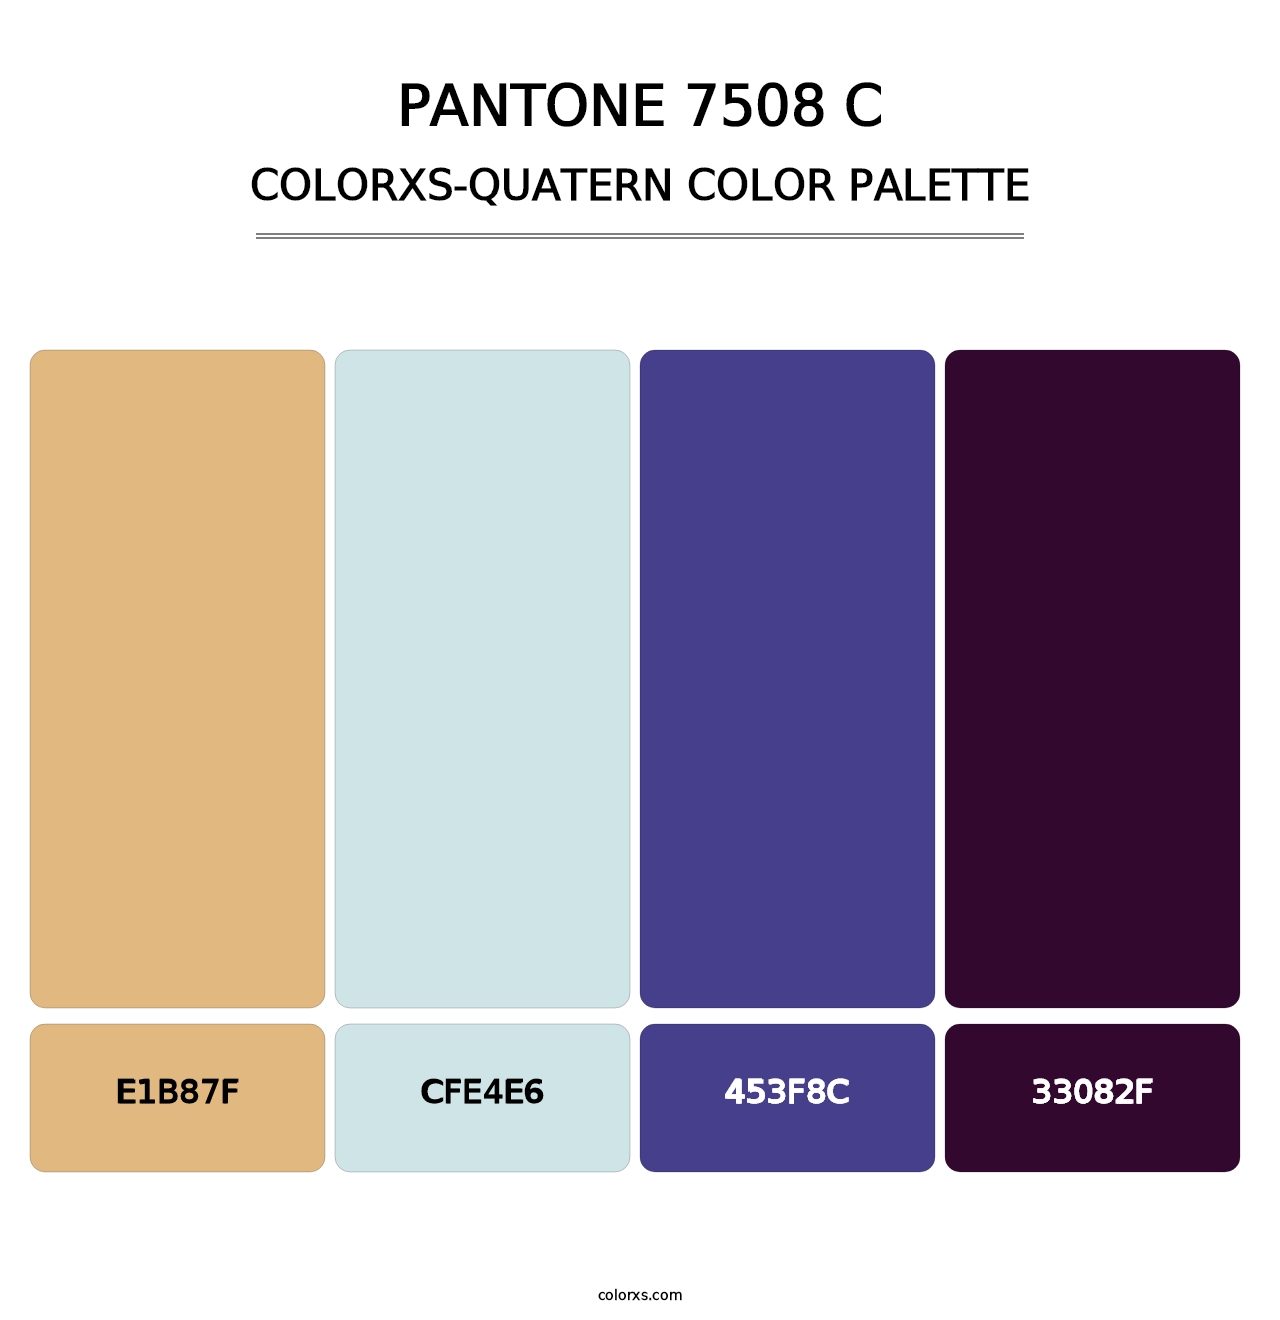 PANTONE 7508 C - Colorxs Quatern Palette